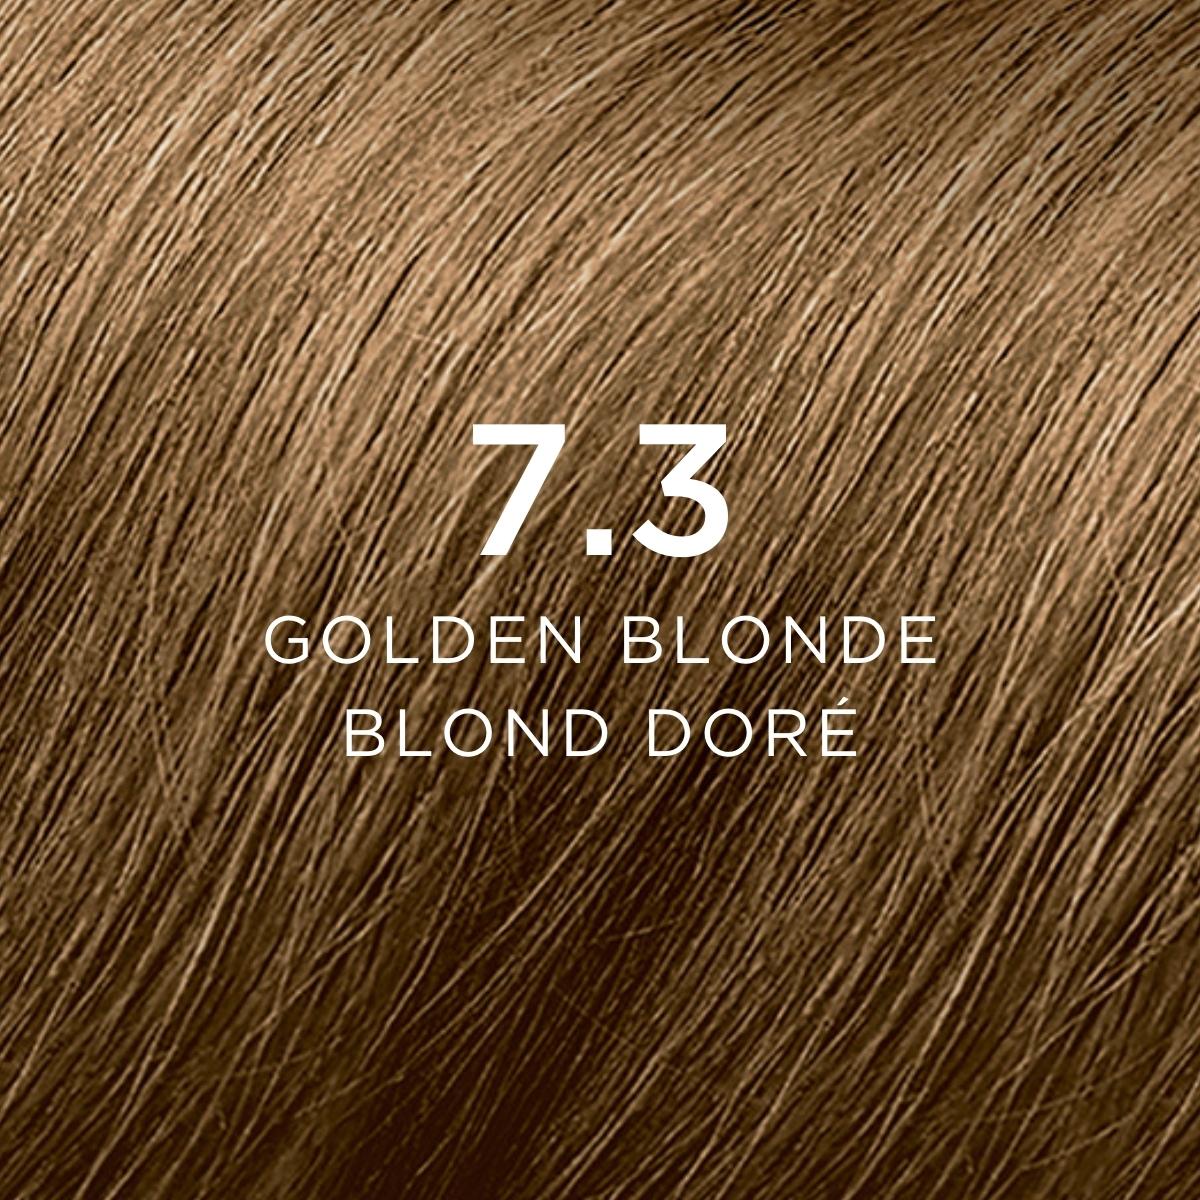 7.3 Golden Blonde